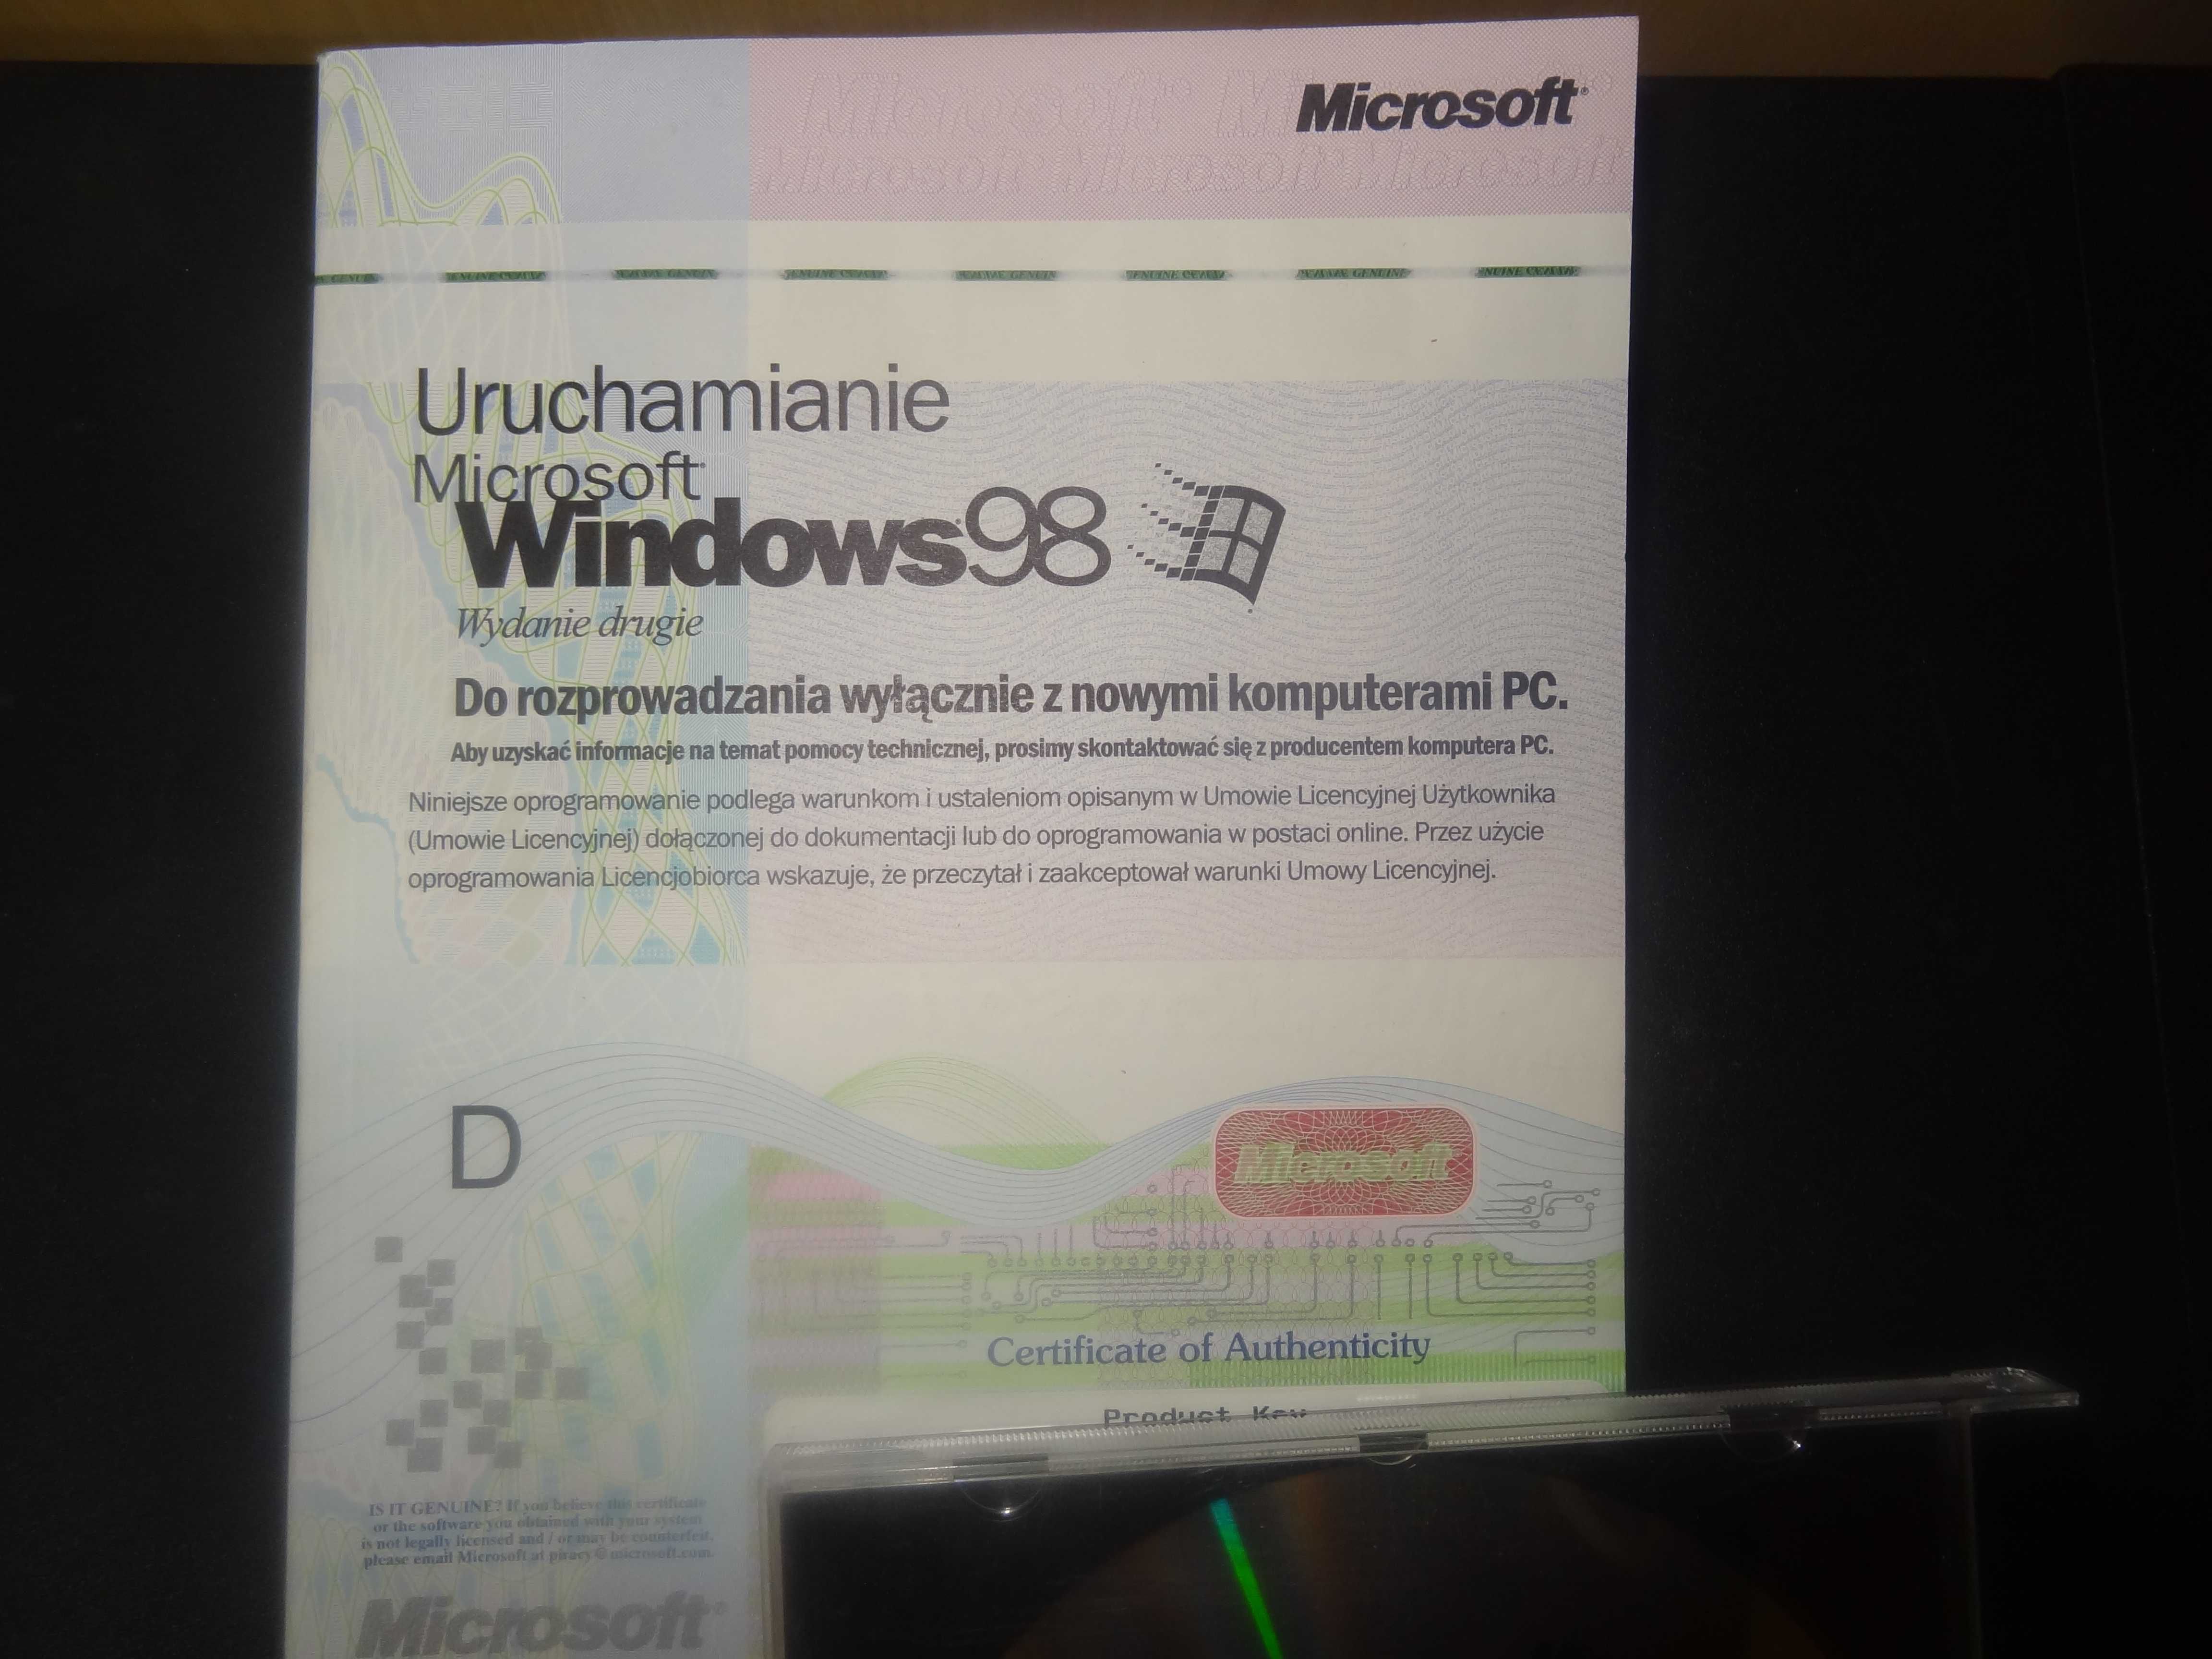 Windows 98  wydanie drugie  płyta